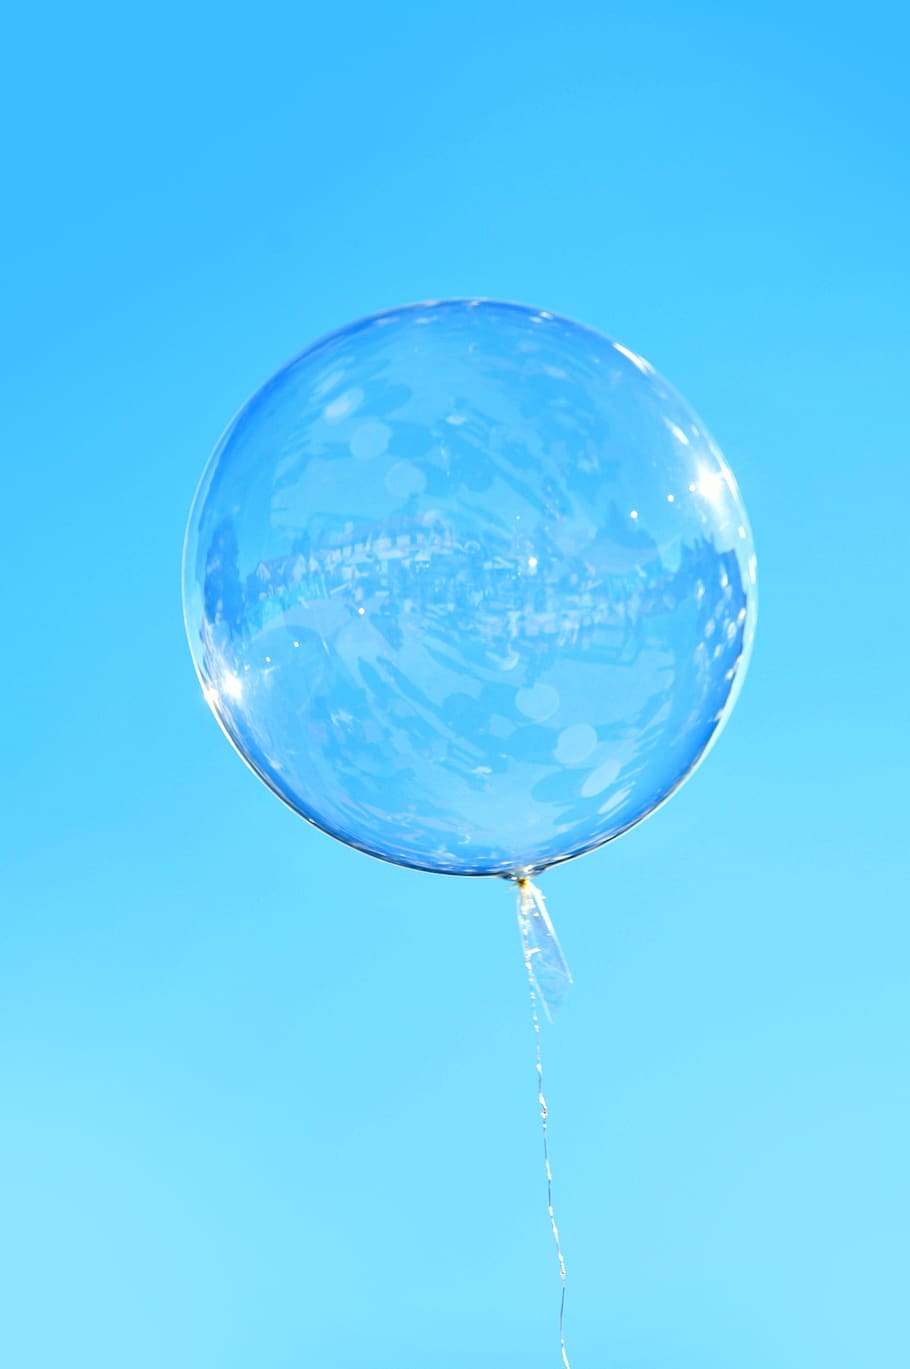 balões, balão, balão de gás, voar, ar, voo, vento, inflável, passatempo, figuras de balão